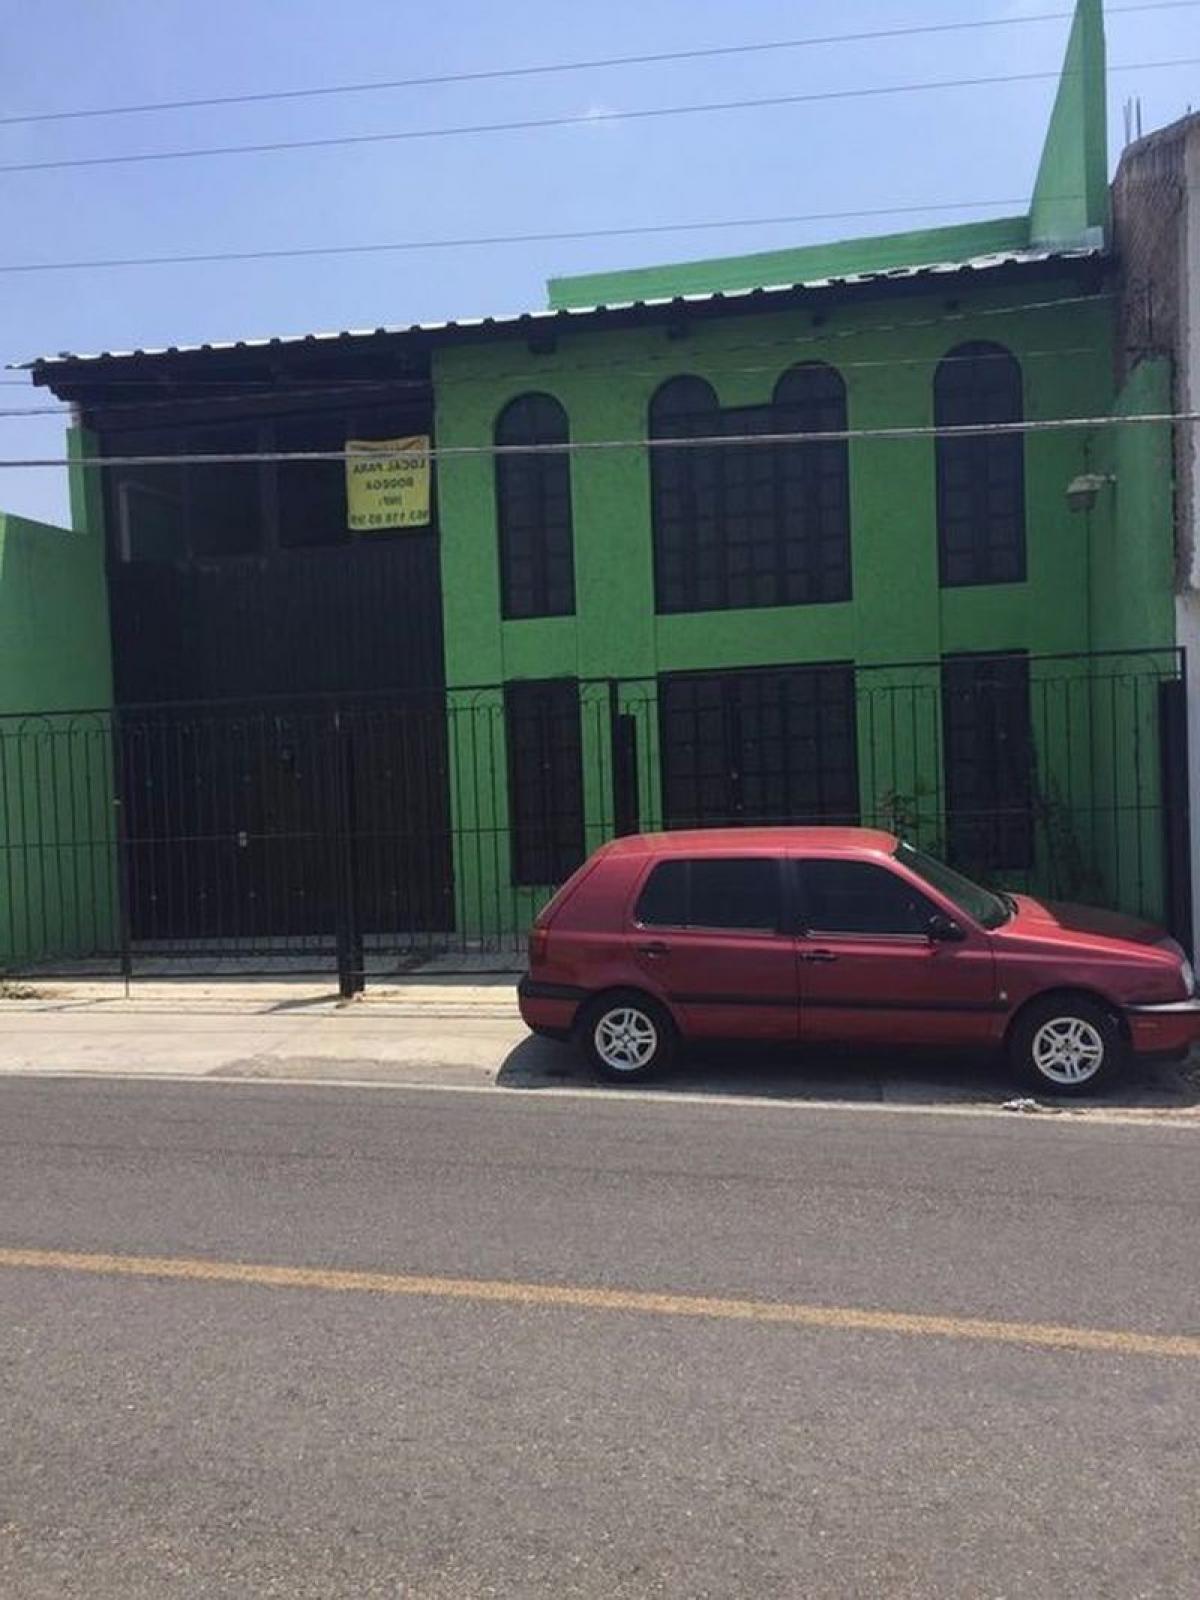 Picture of Penthouse For Sale in Comitan De Dominguez, Chiapas, Mexico